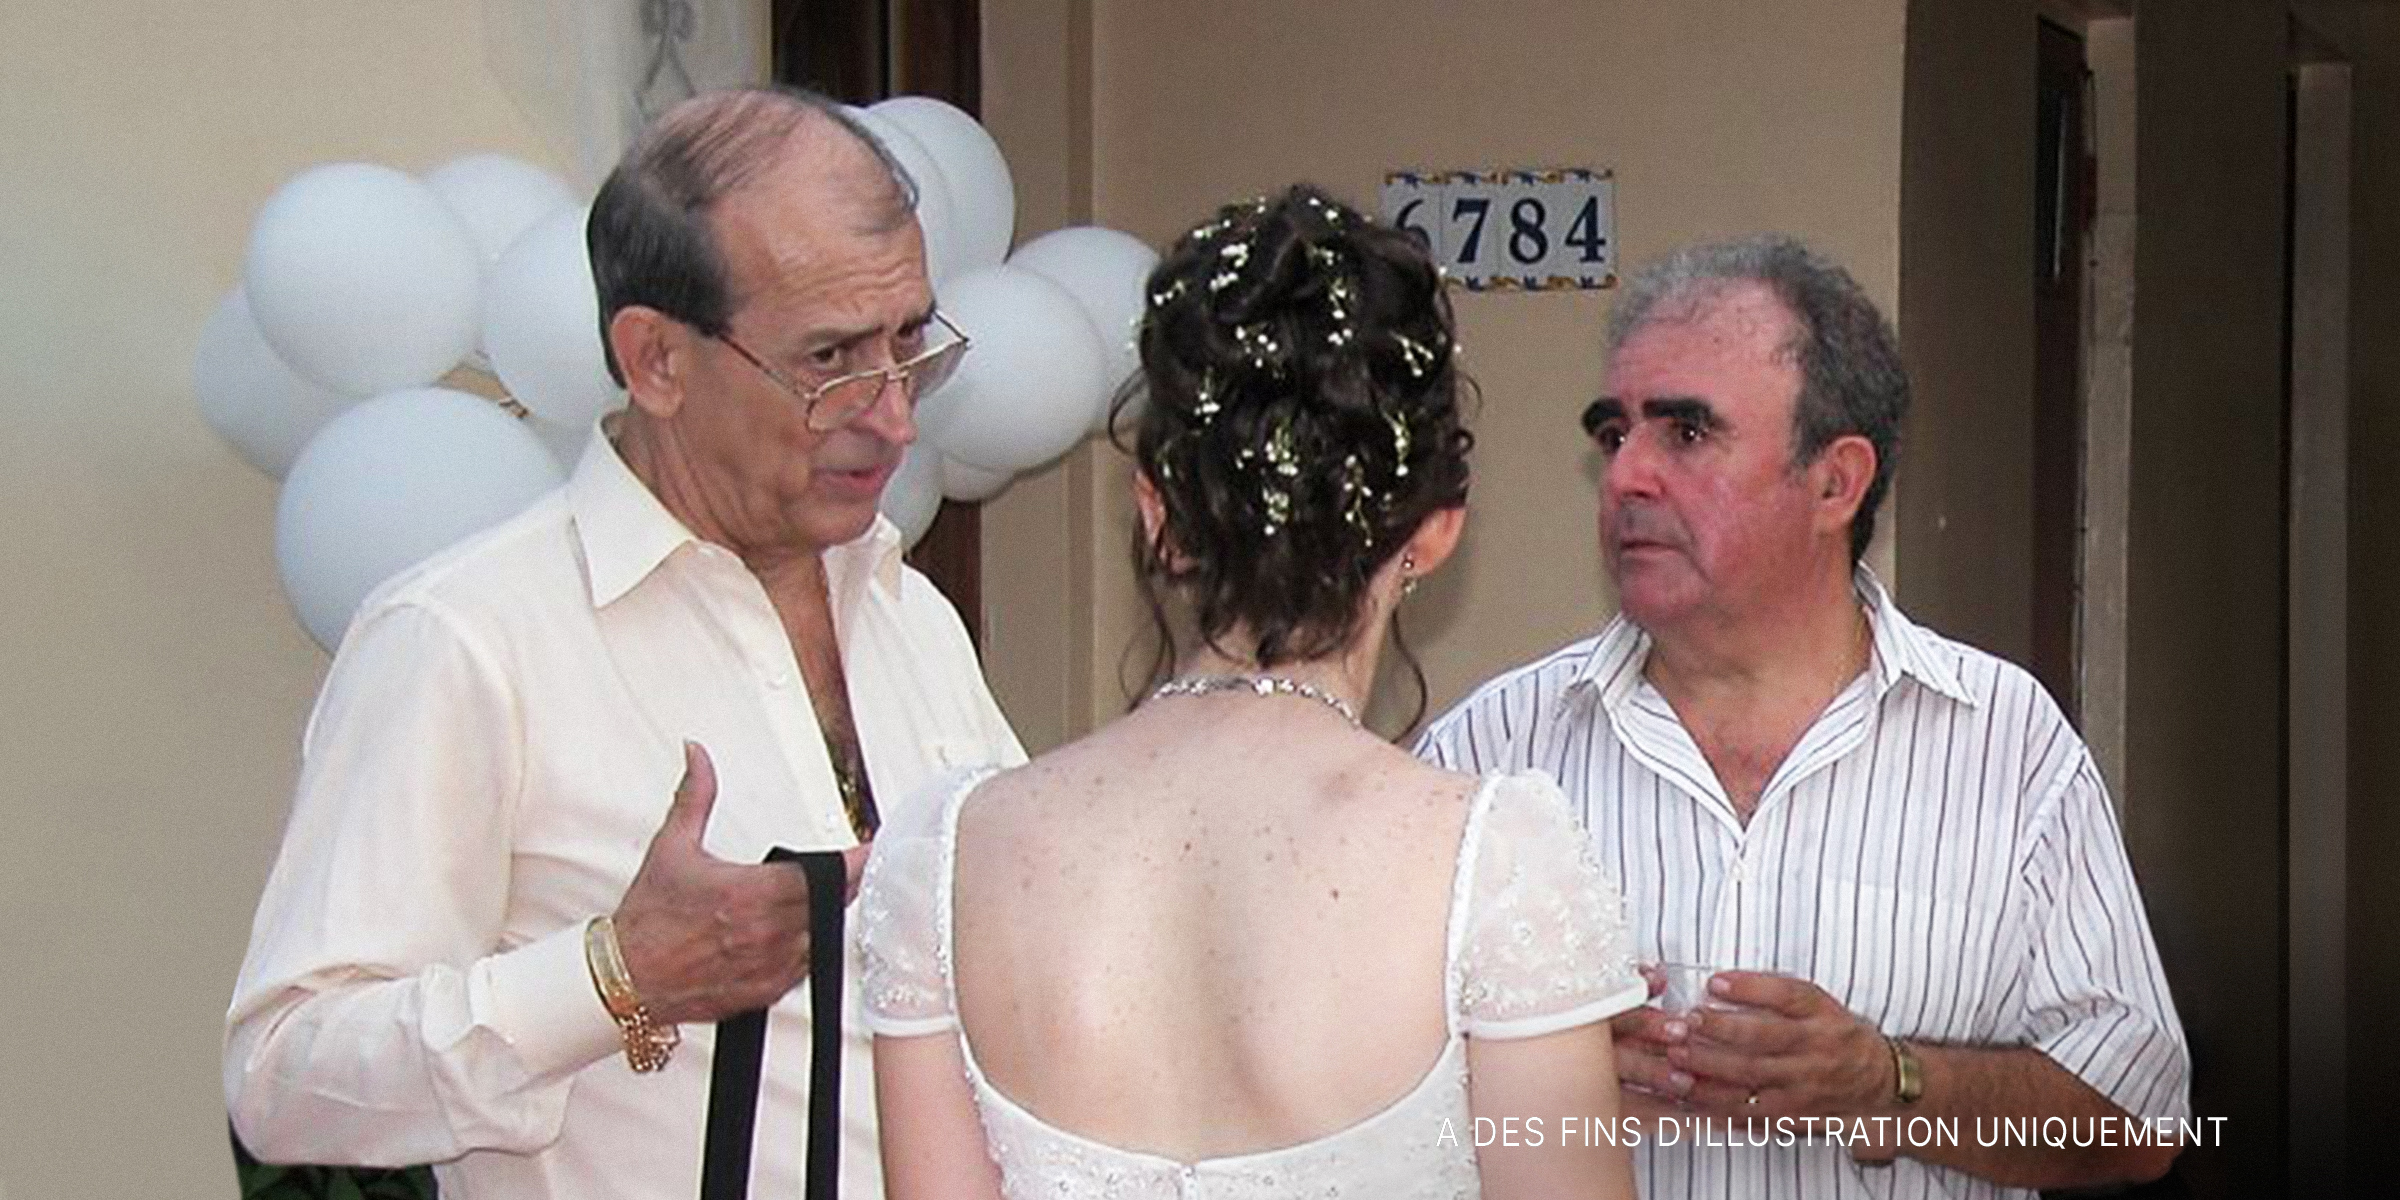 Deux hommes sérieux en pleine conversation avec une mariée | Source : Flickr / fer320 (CC BY 2.0)